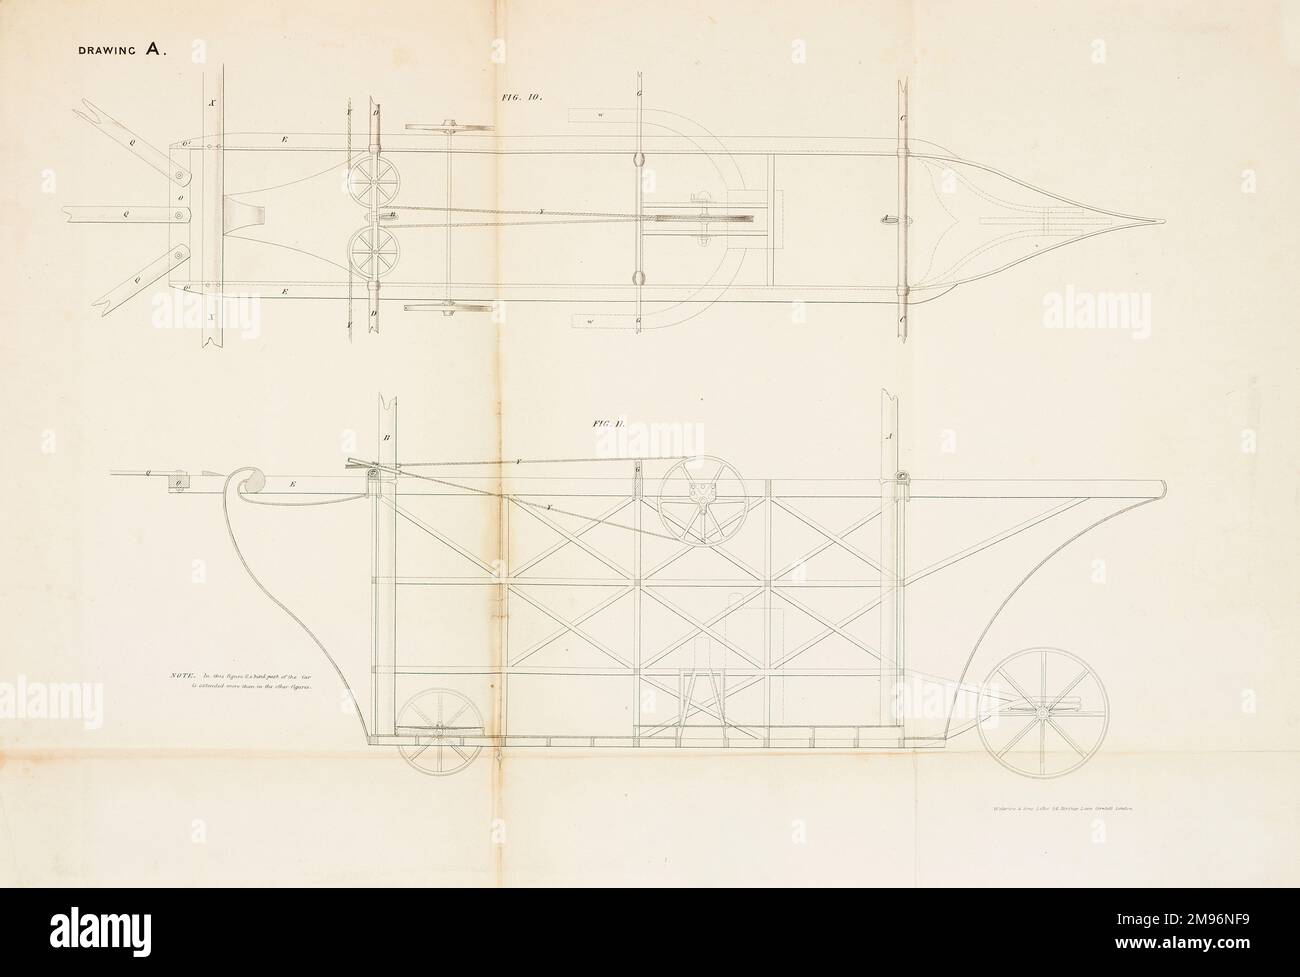 La carrozza aerea a vapore -- vista ingrandita della vettura o carrozza. Questa macchina volante fu brevettata da William Samuel Henson (1812-1888) e John Stringfellow (1799-1883) nel 1842. Foto Stock